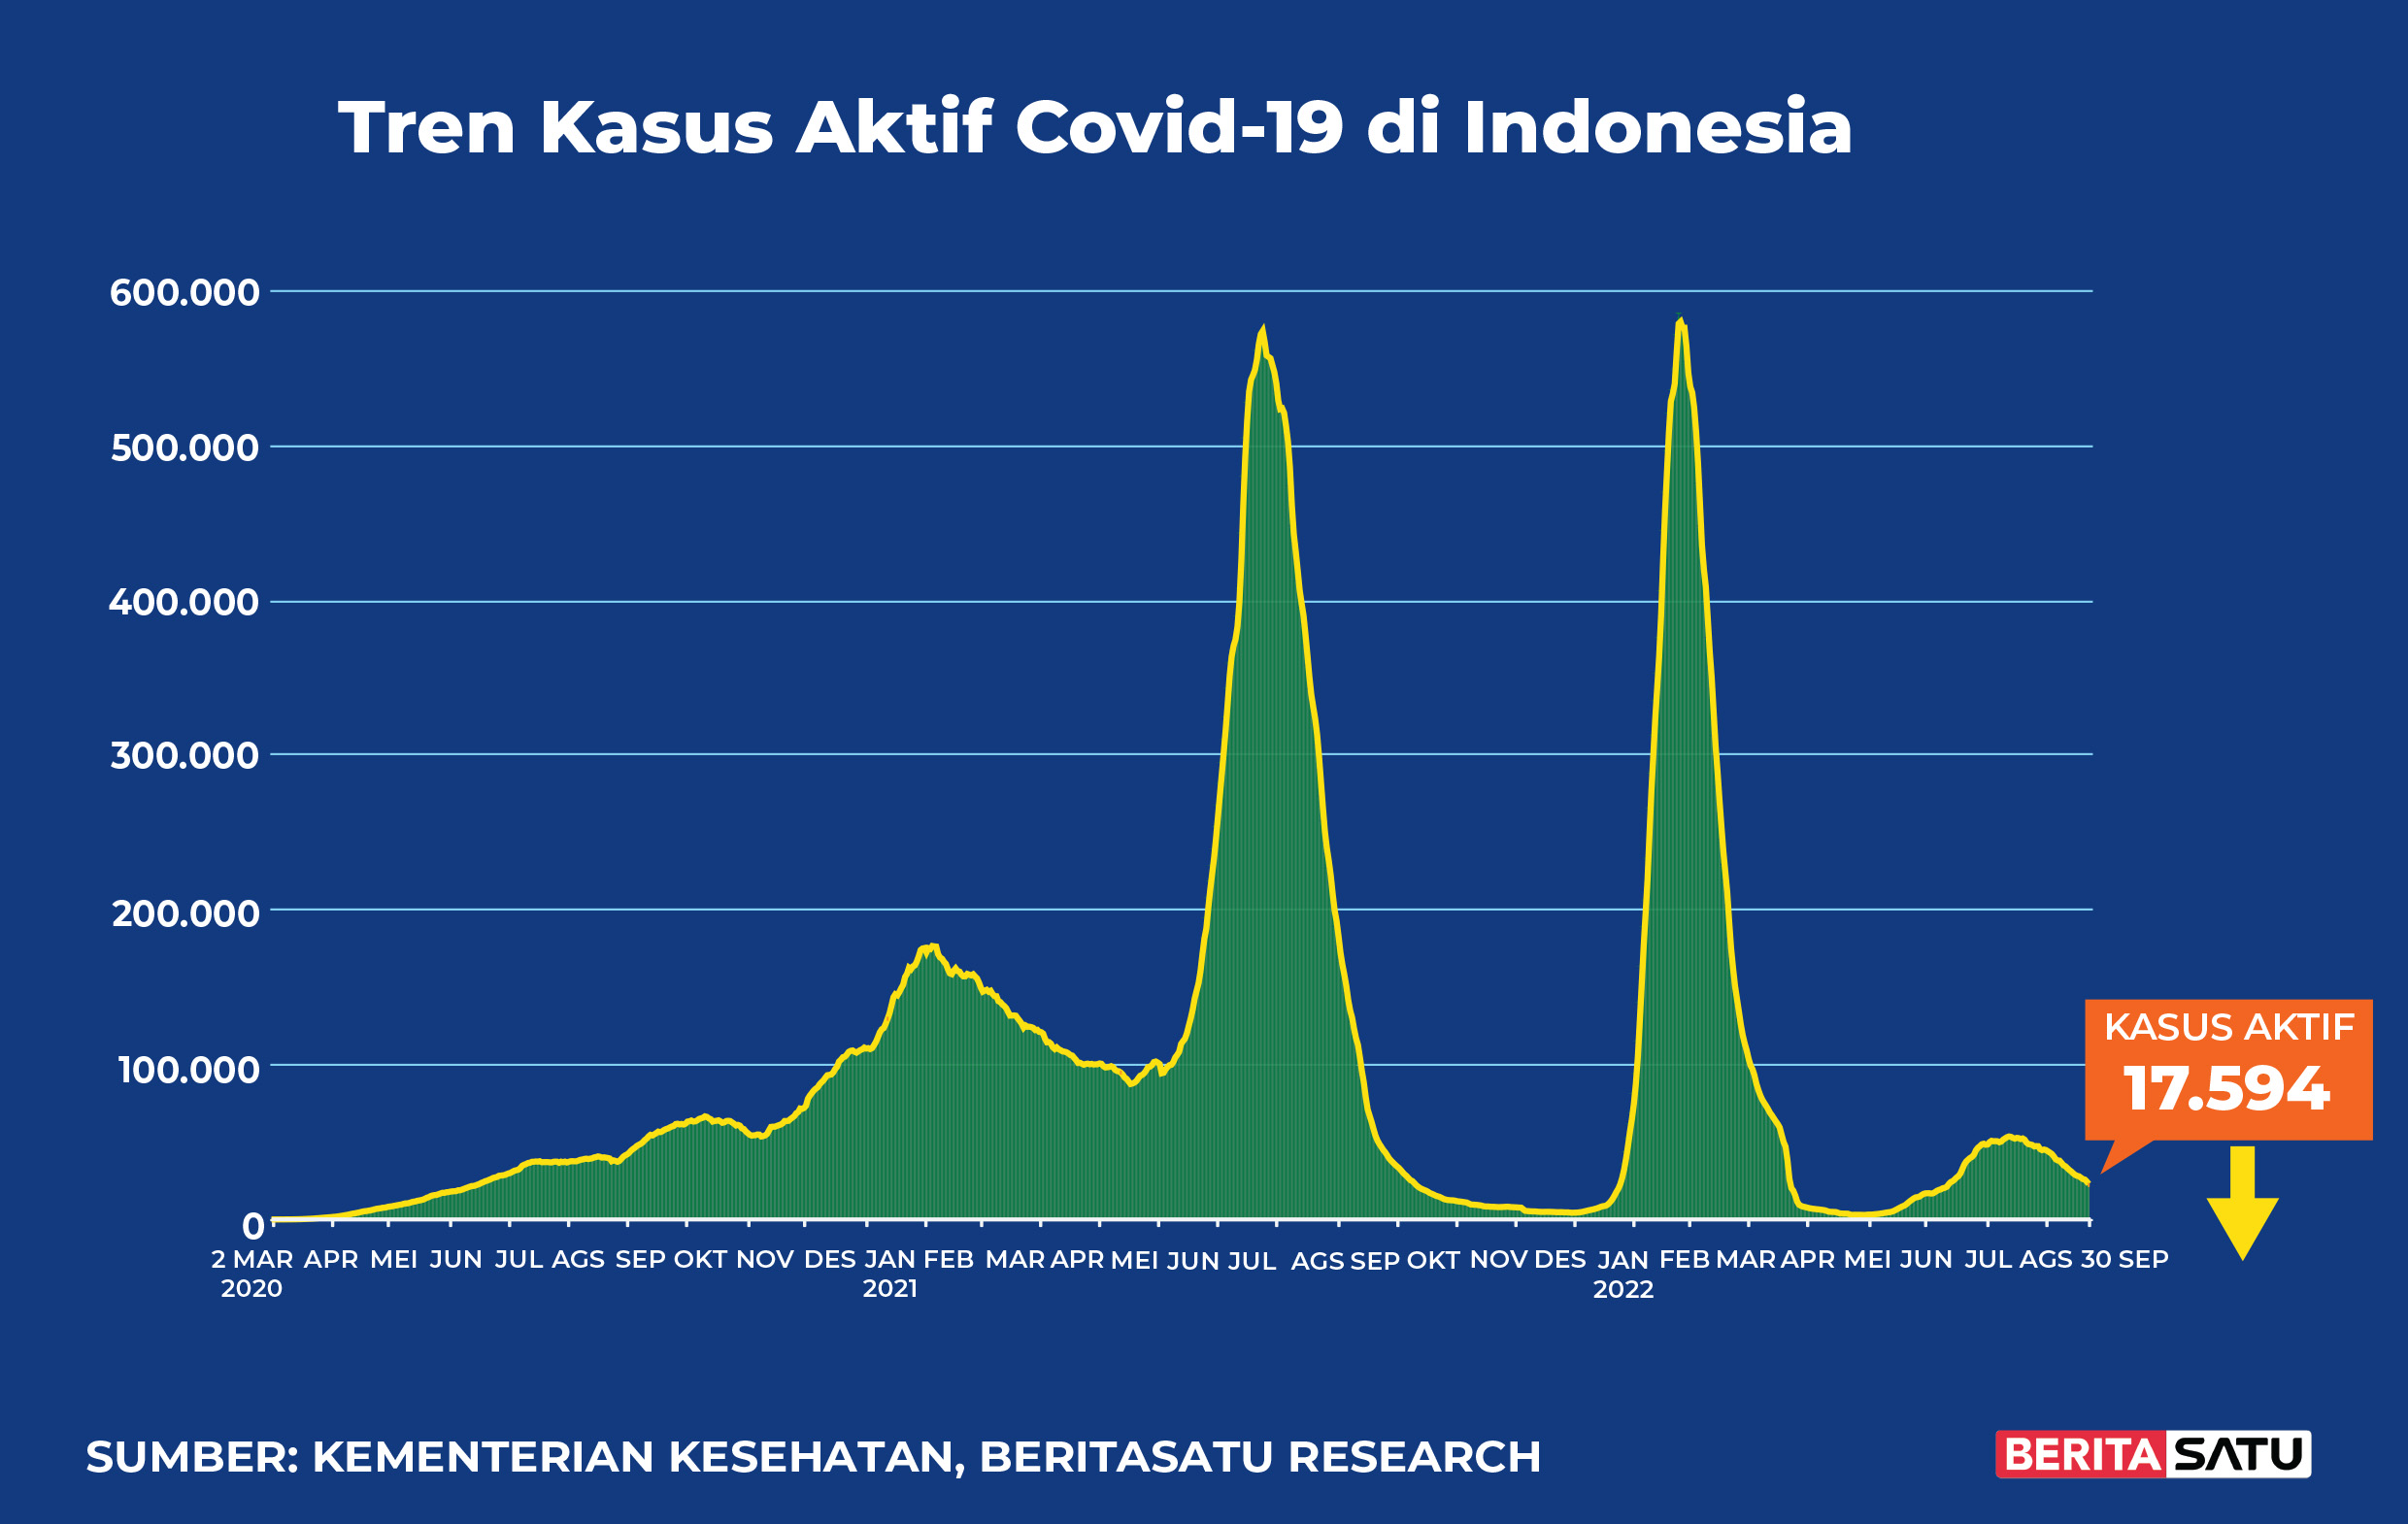 Kasus Aktif Covid-19 di Indonesia sampai 30 September 2022